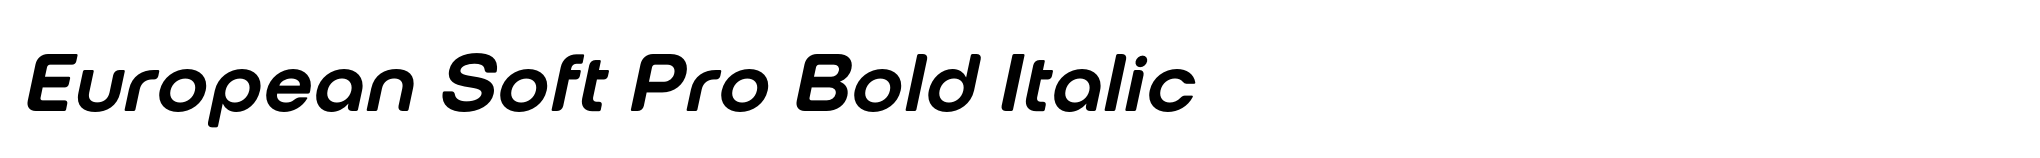 European Soft Pro Bold Italic image